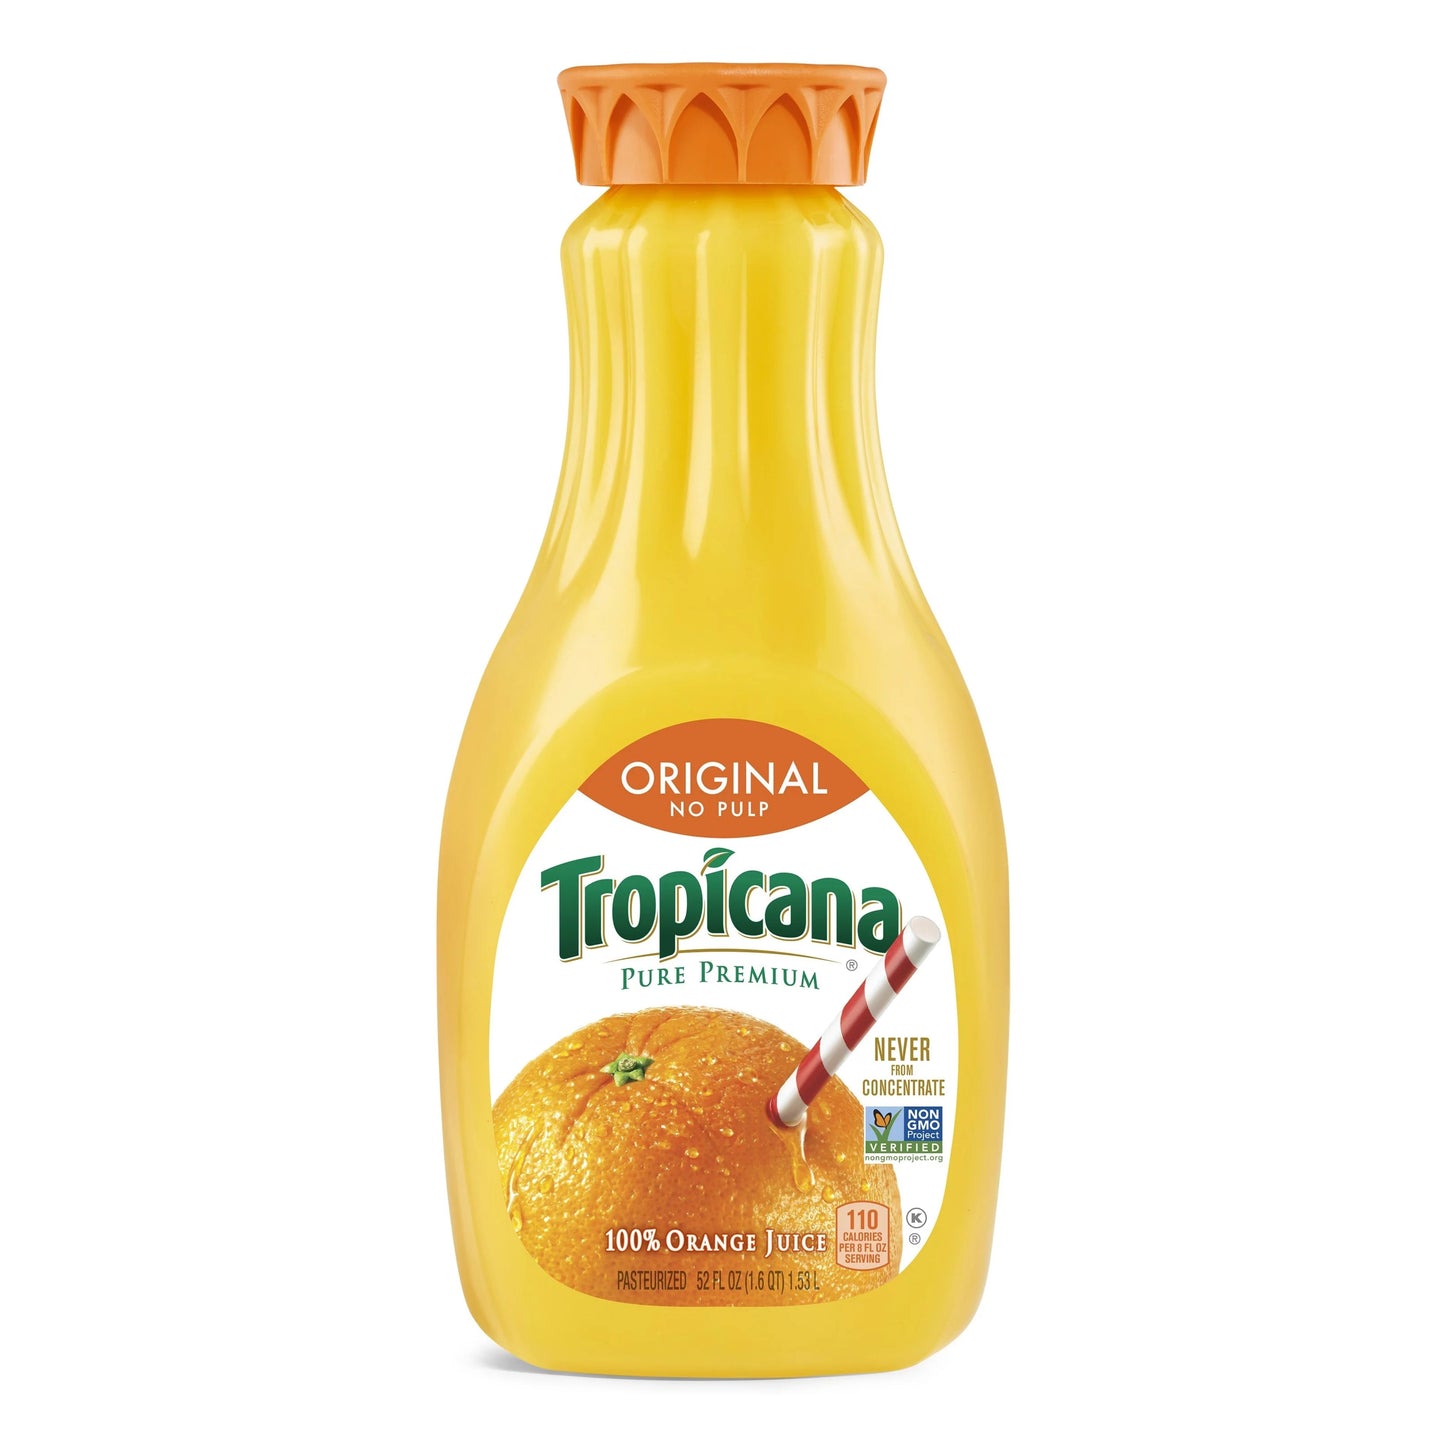 Tropicana Original No Pulp Orange Juice